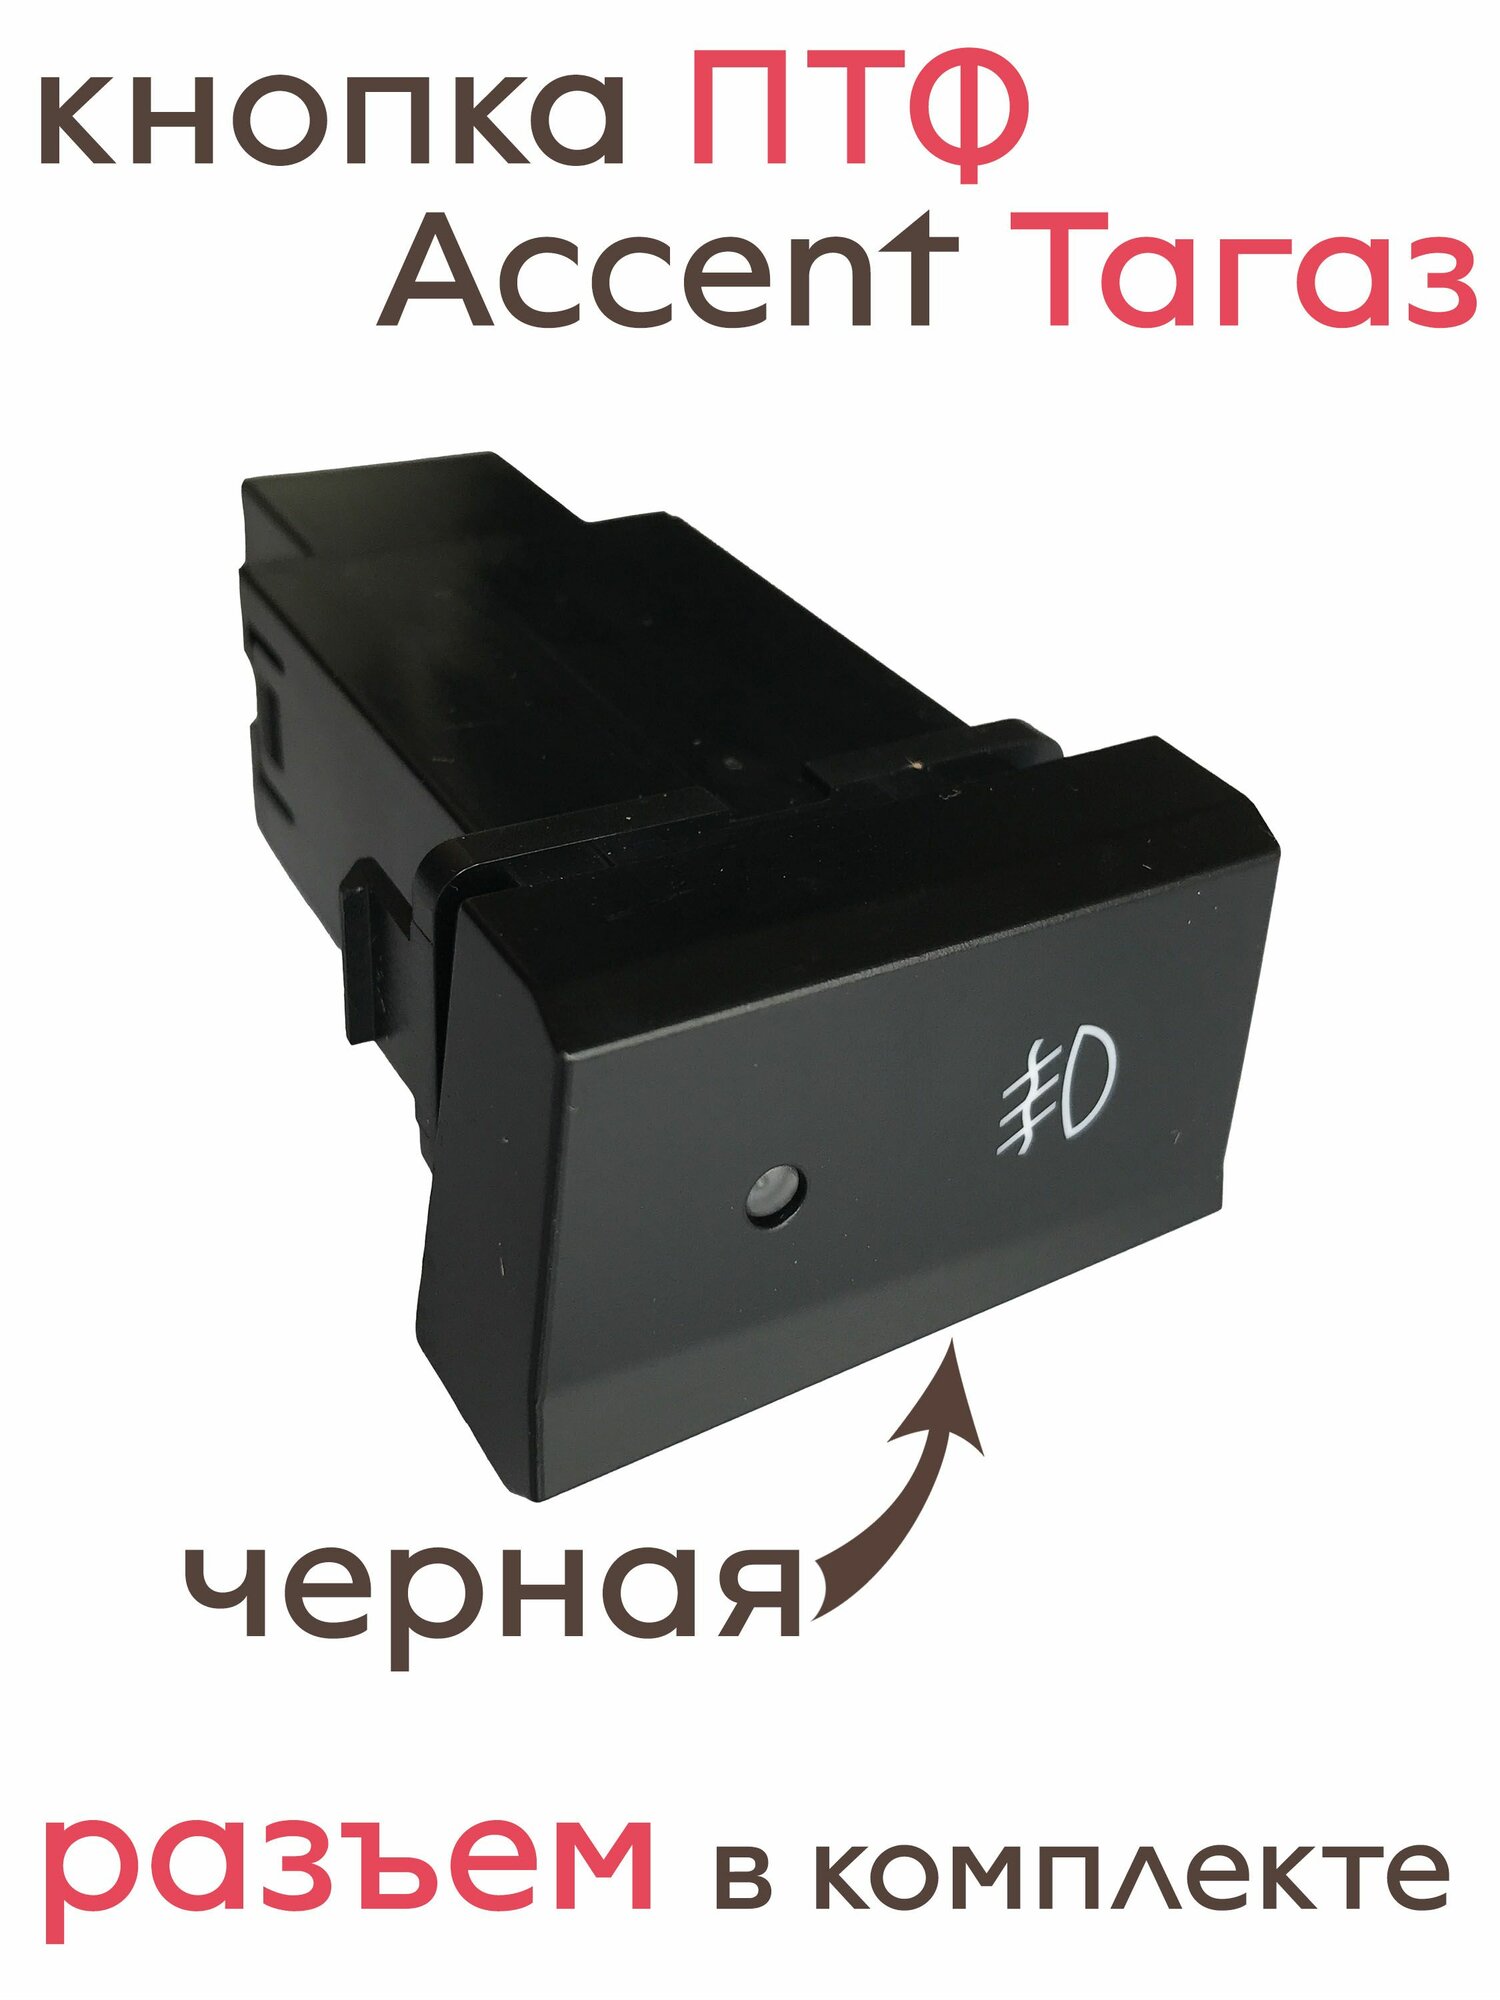 Неоригинальная черная кнопка включения передних противотуманных фар / кнопка ПТФ Хендай Акцент Тагаз (Accent Tagaz).